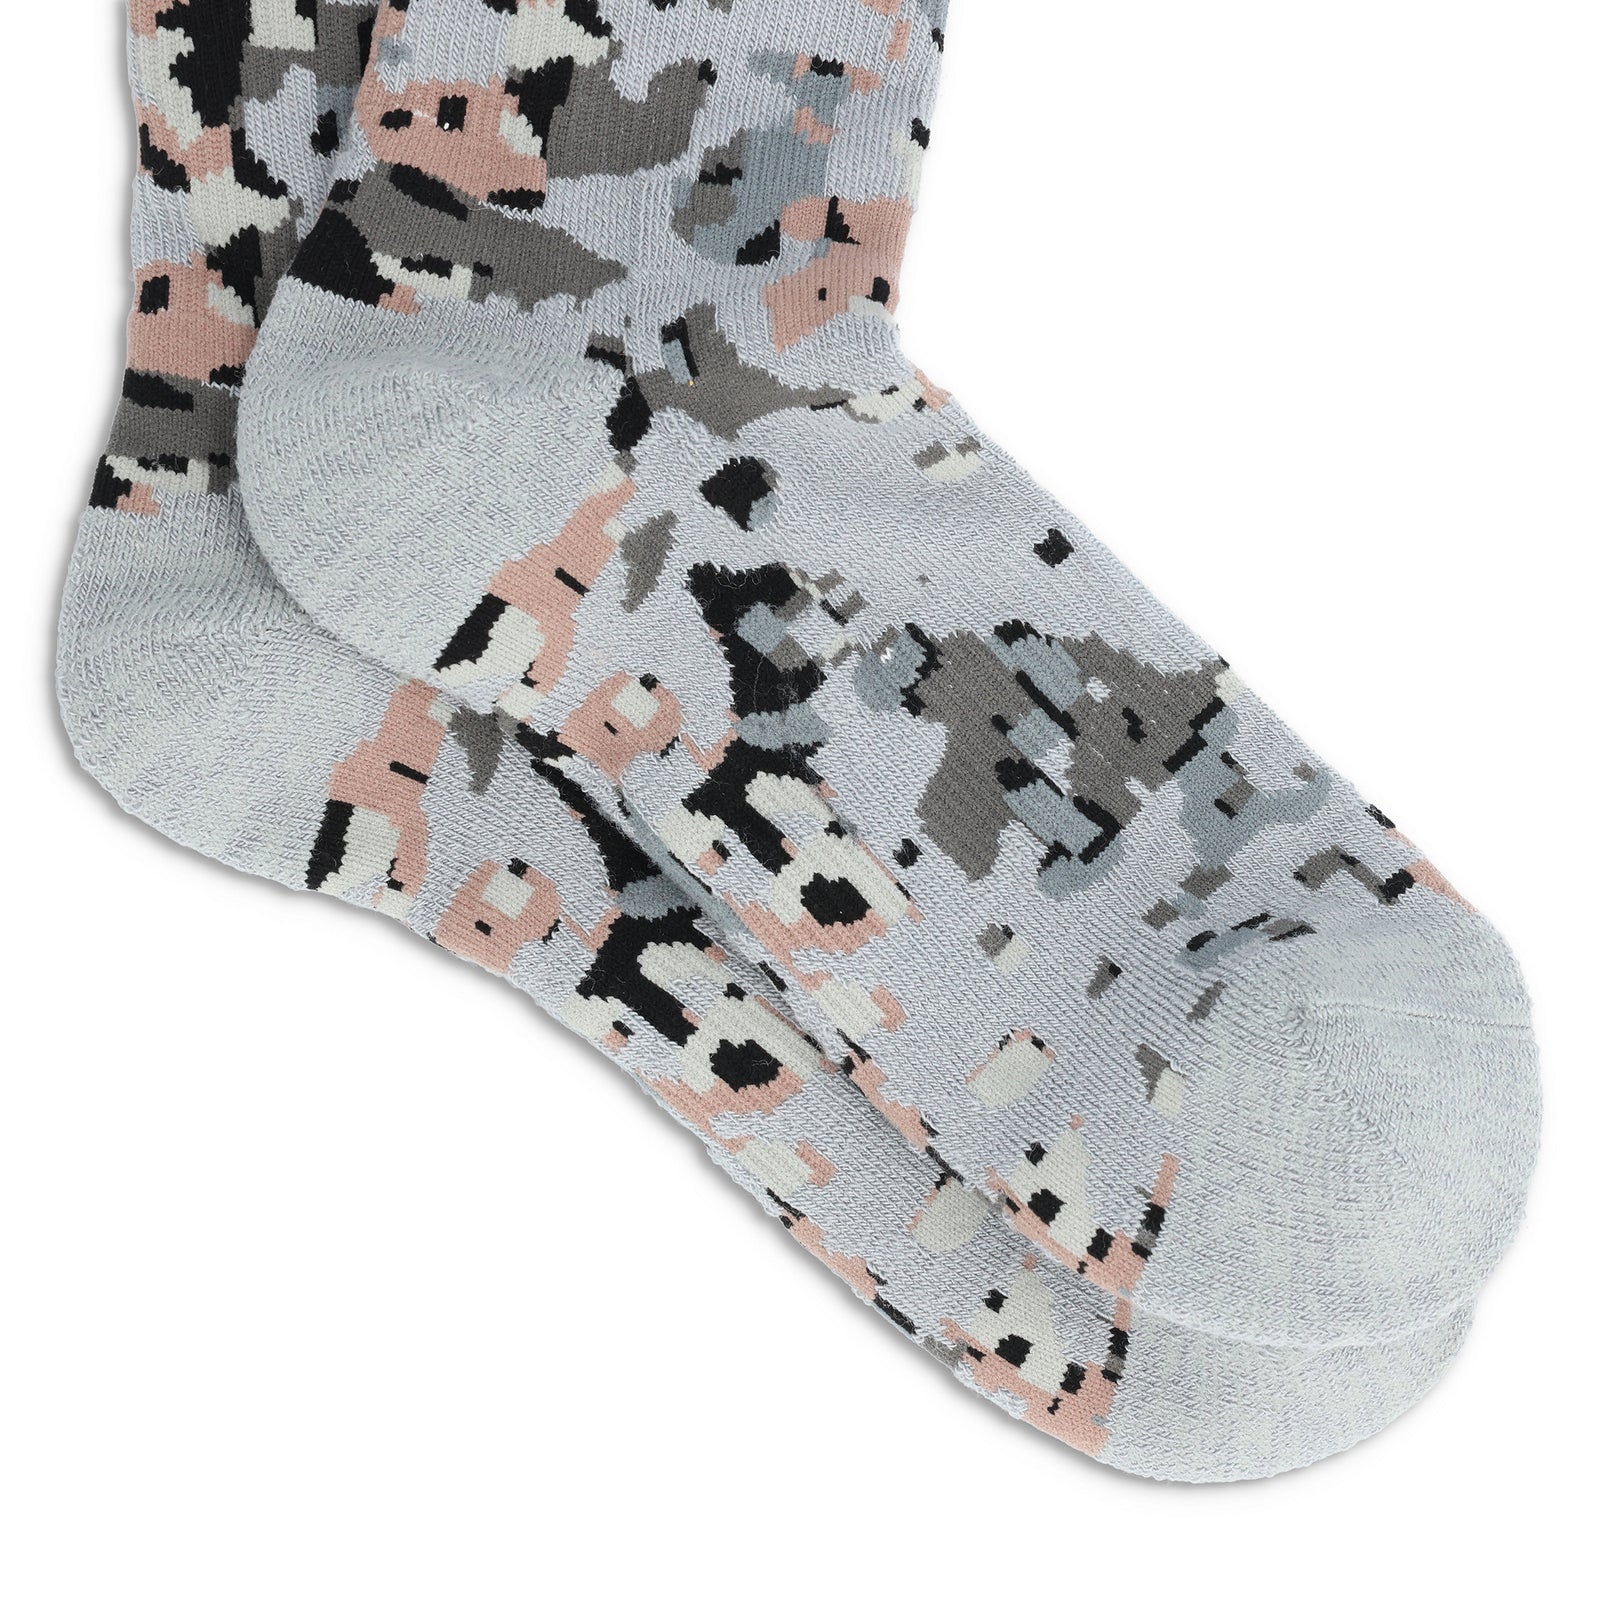 Detail shot of Topo Designs Town Socks in "Slate Nebula"